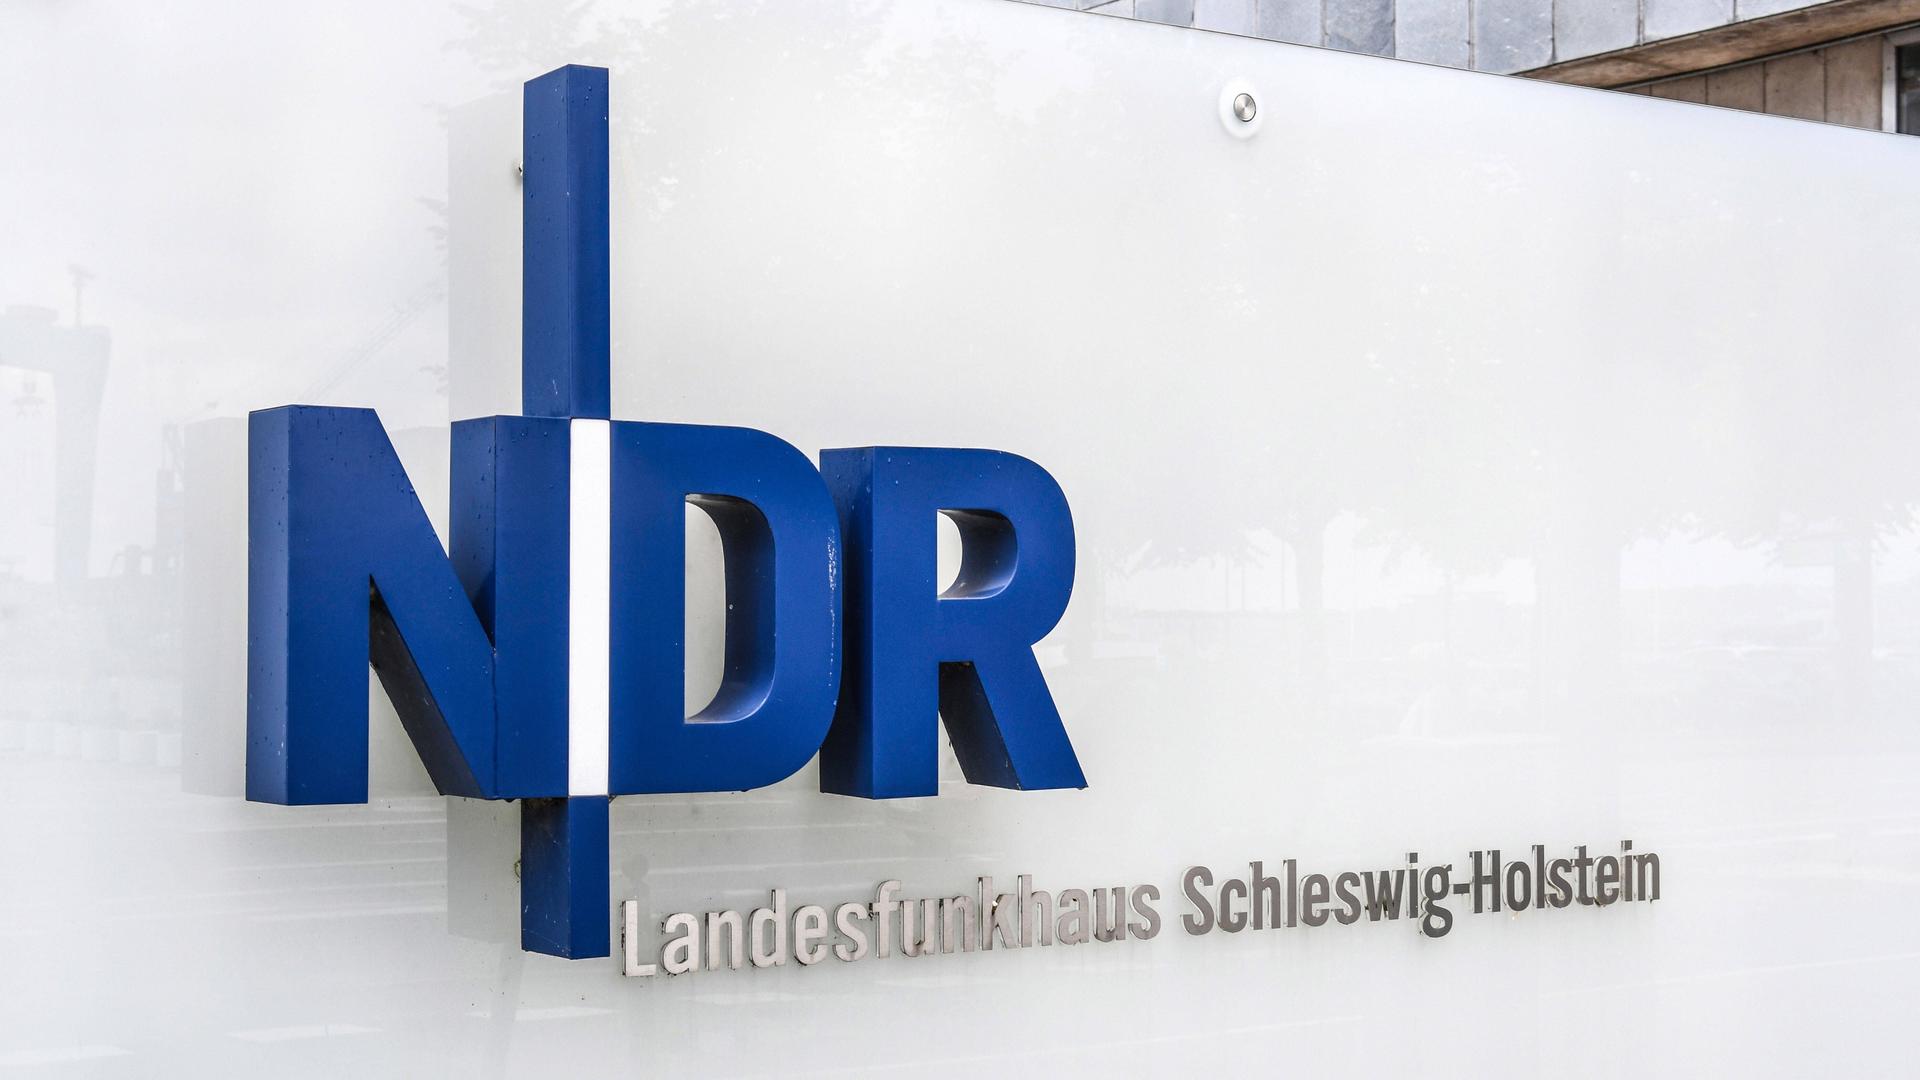 Man sieht das Logo vom Sender NDR. Es steht auf dem Büro-Gebäude in der Stadt Kiel.